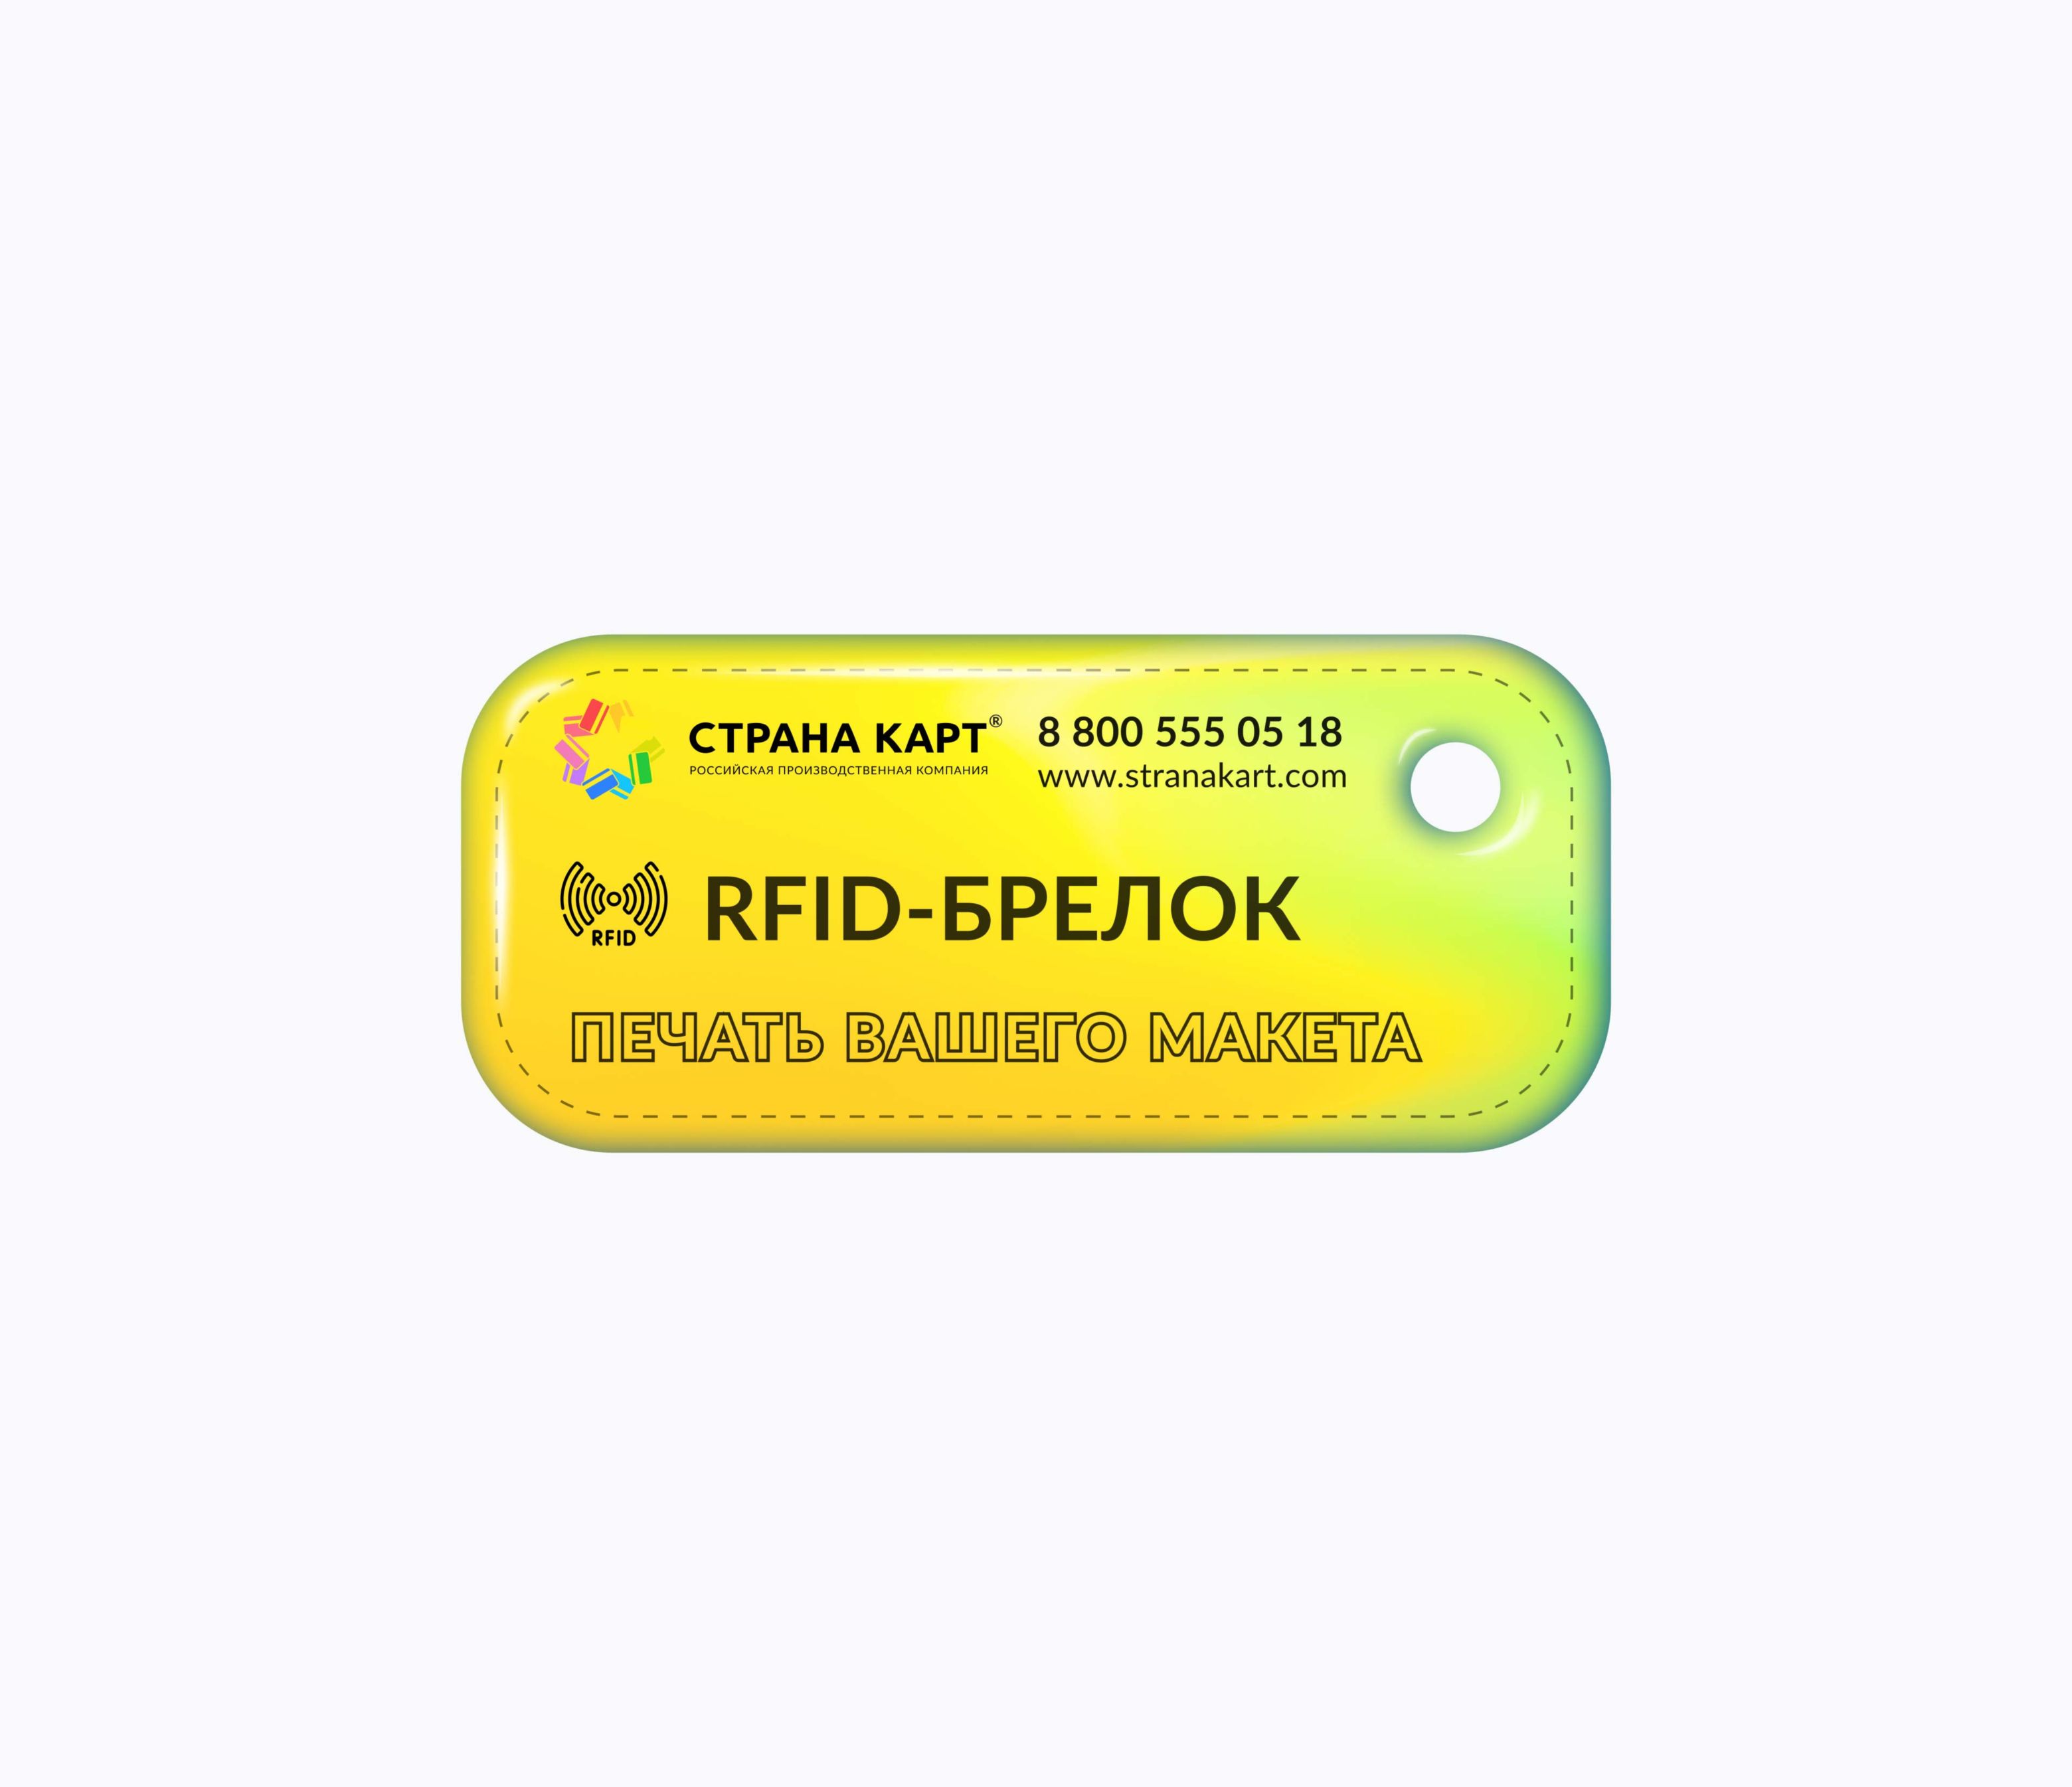 Прямоугольные Мини RFID-брелоки NEOKEY® с чипом для бассейнов RFID-брелоки NEOKEY® с чипом для бассейнов